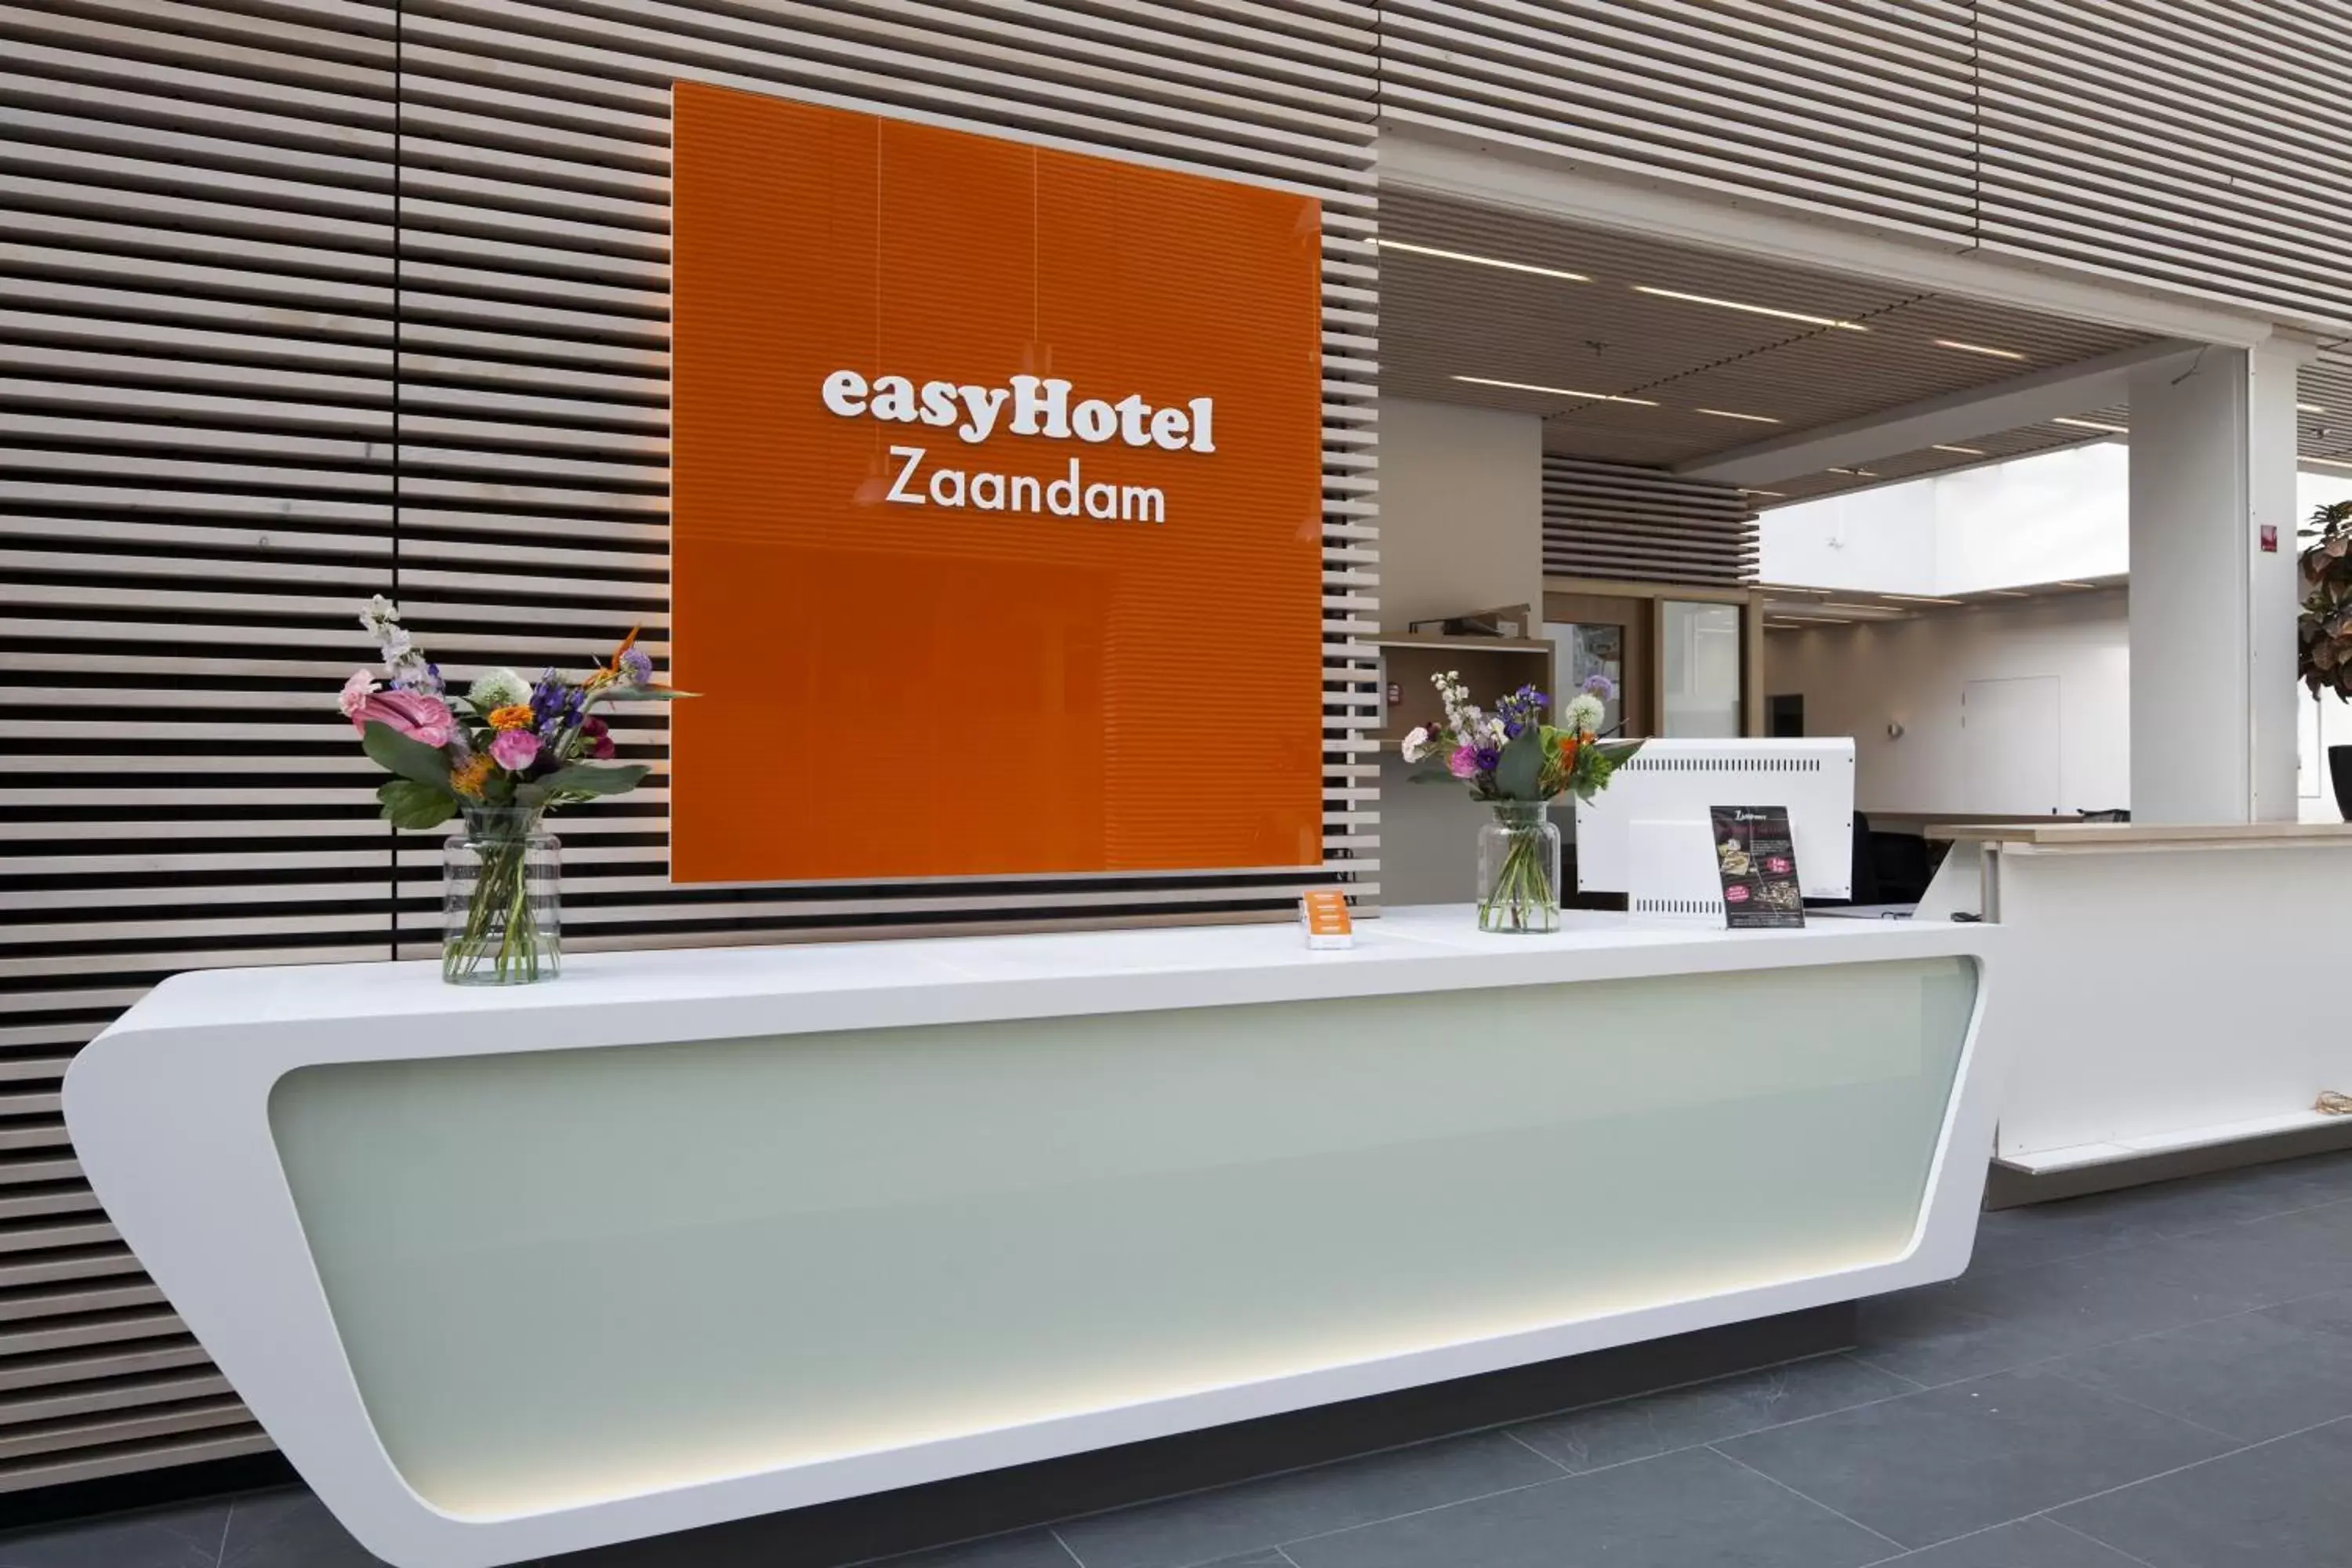 Lobby or reception in easyHotel Amsterdam Zaandam